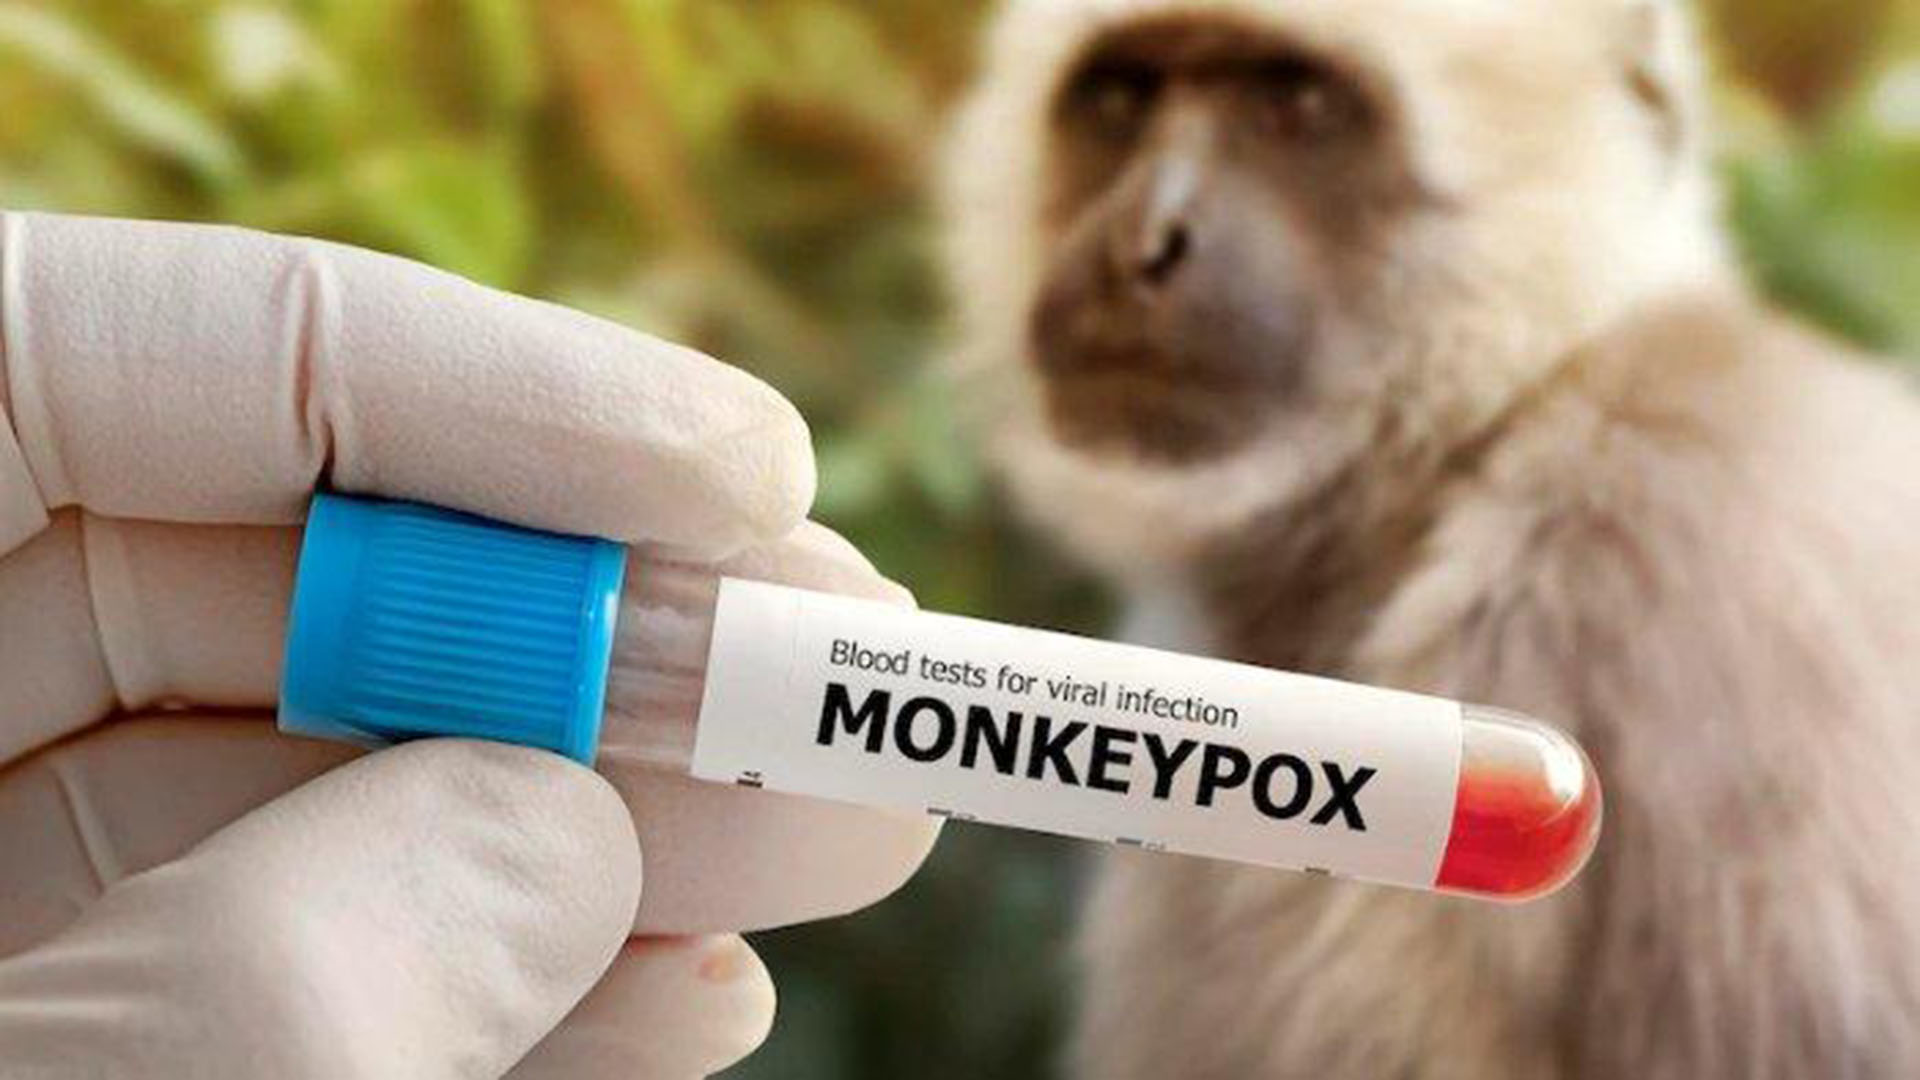 Mulai Masuk ke Indonesia, Apa Penyakit Cacar Monyet Bisa disembuhkan?